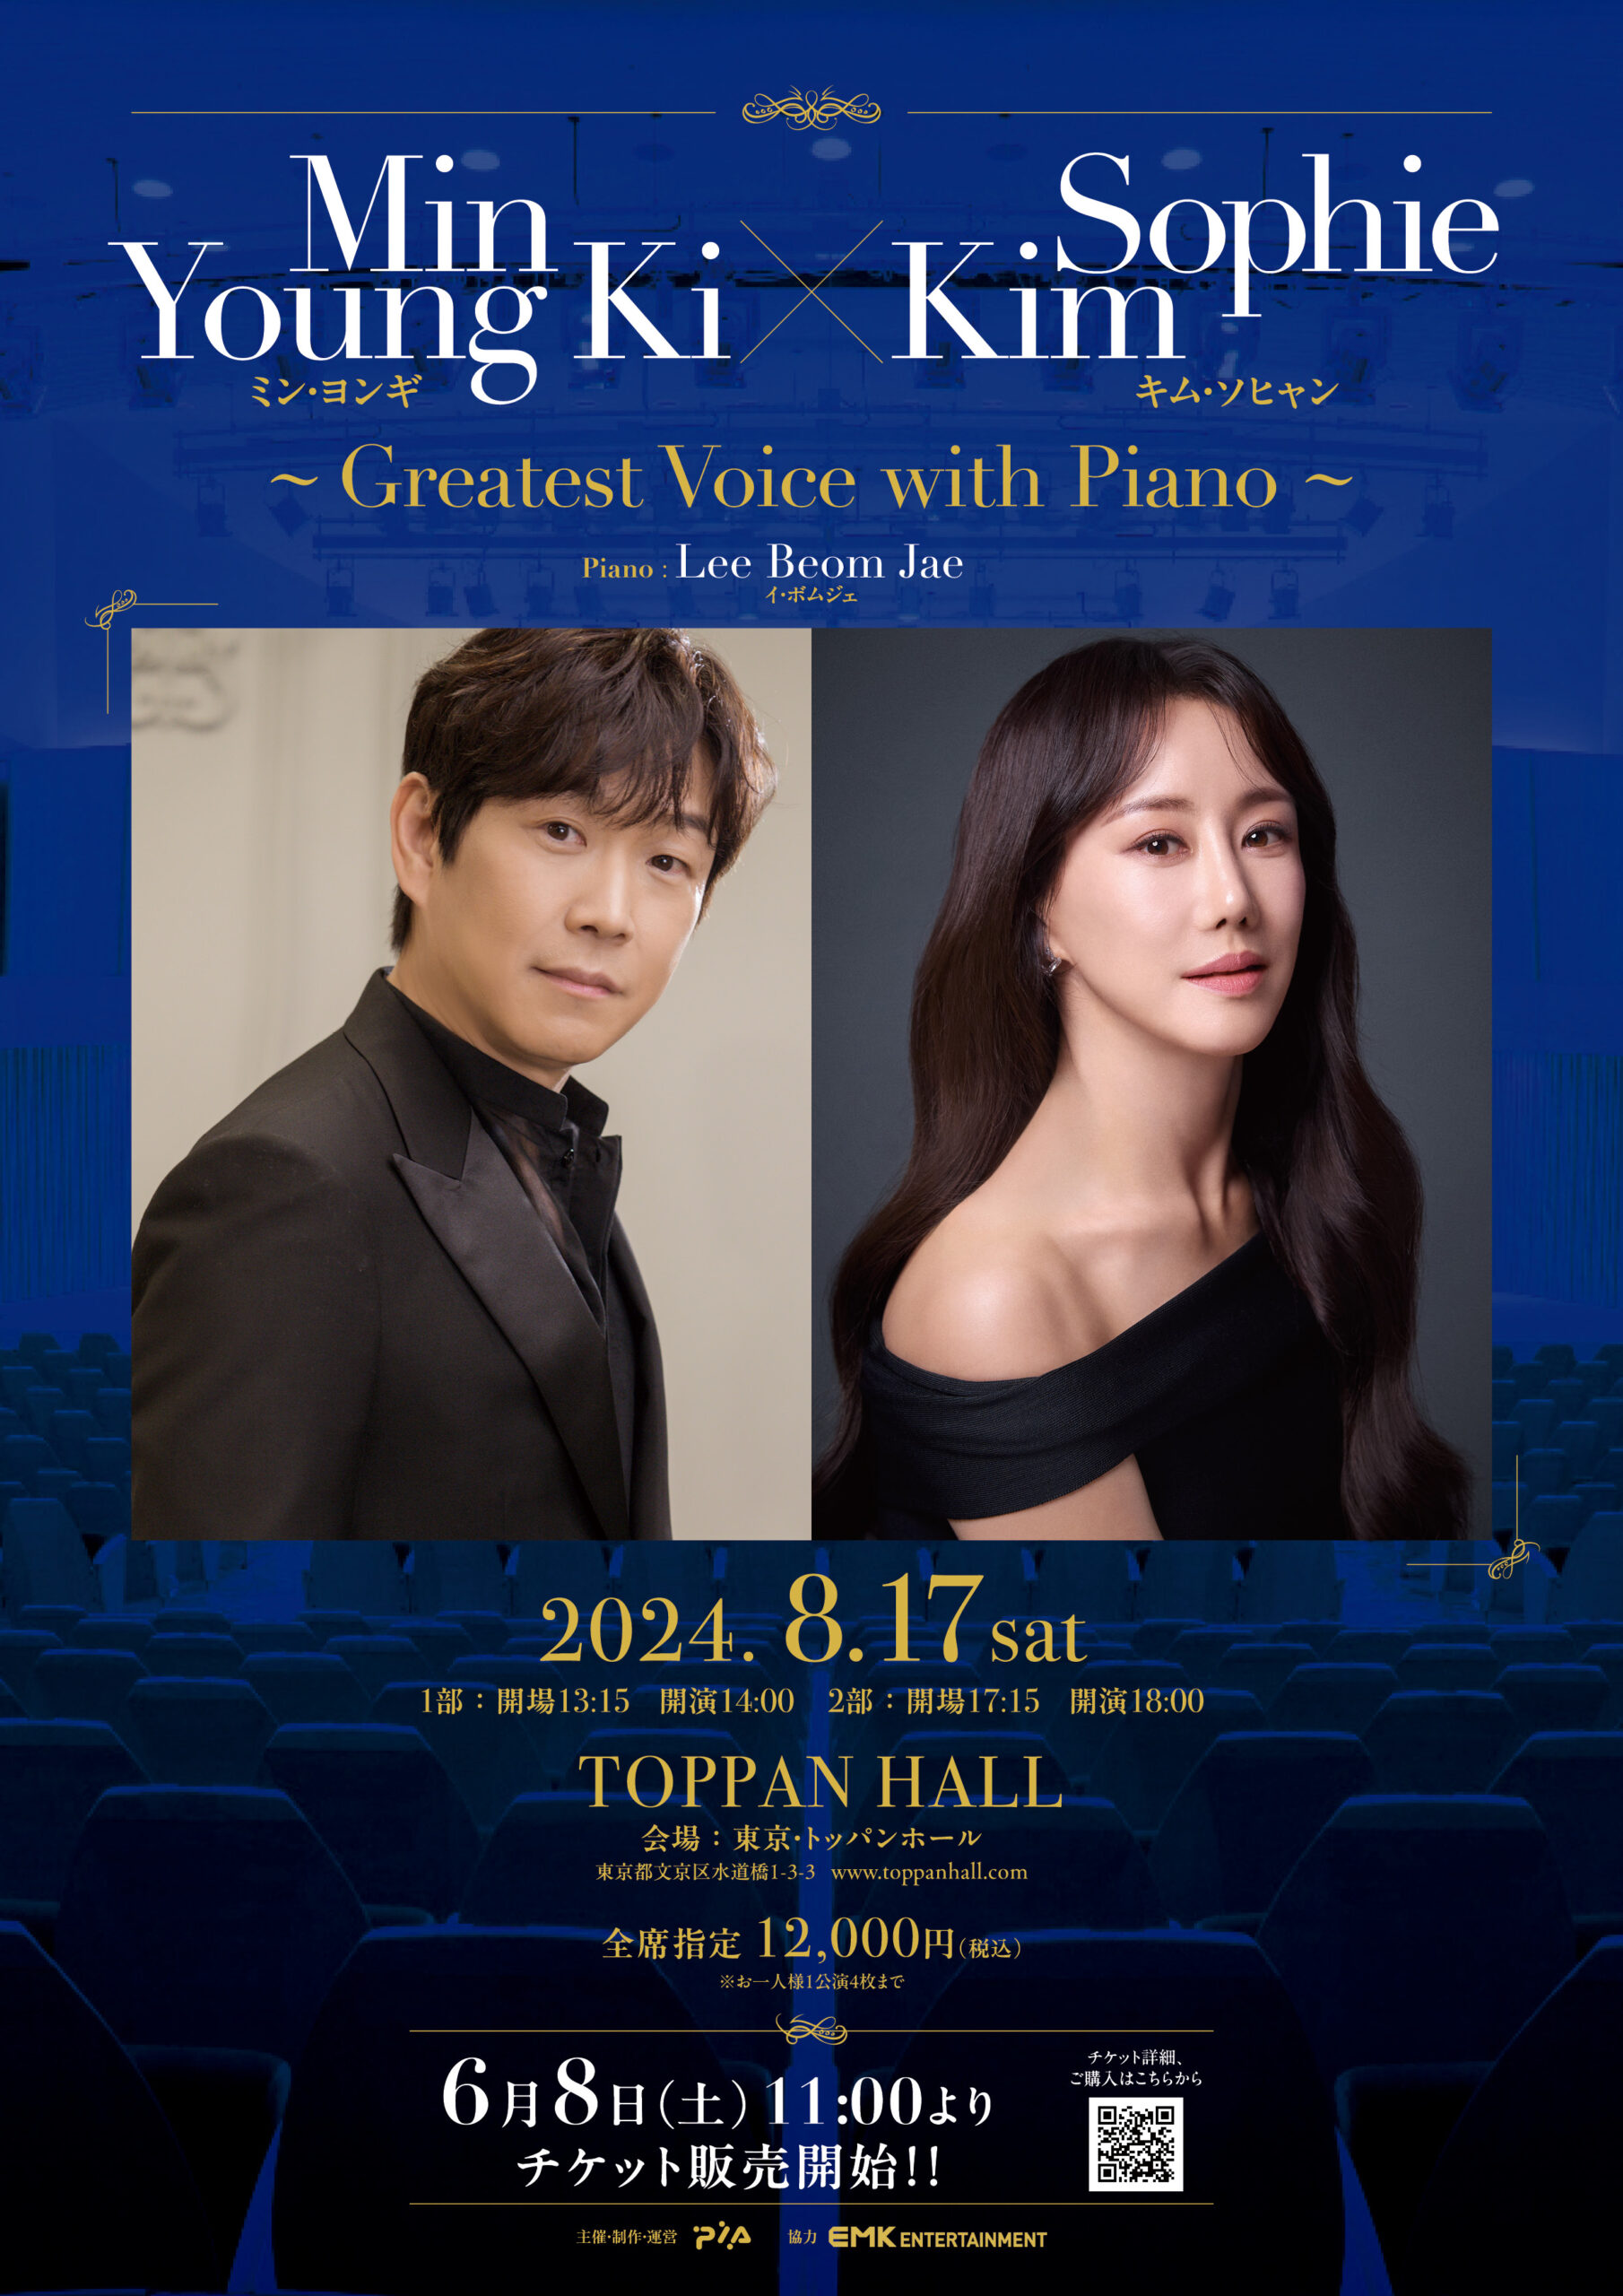 ミン・ヨンギｘキム・ソヒャン Greatest Voice With Piano 開催決定のお知らせ